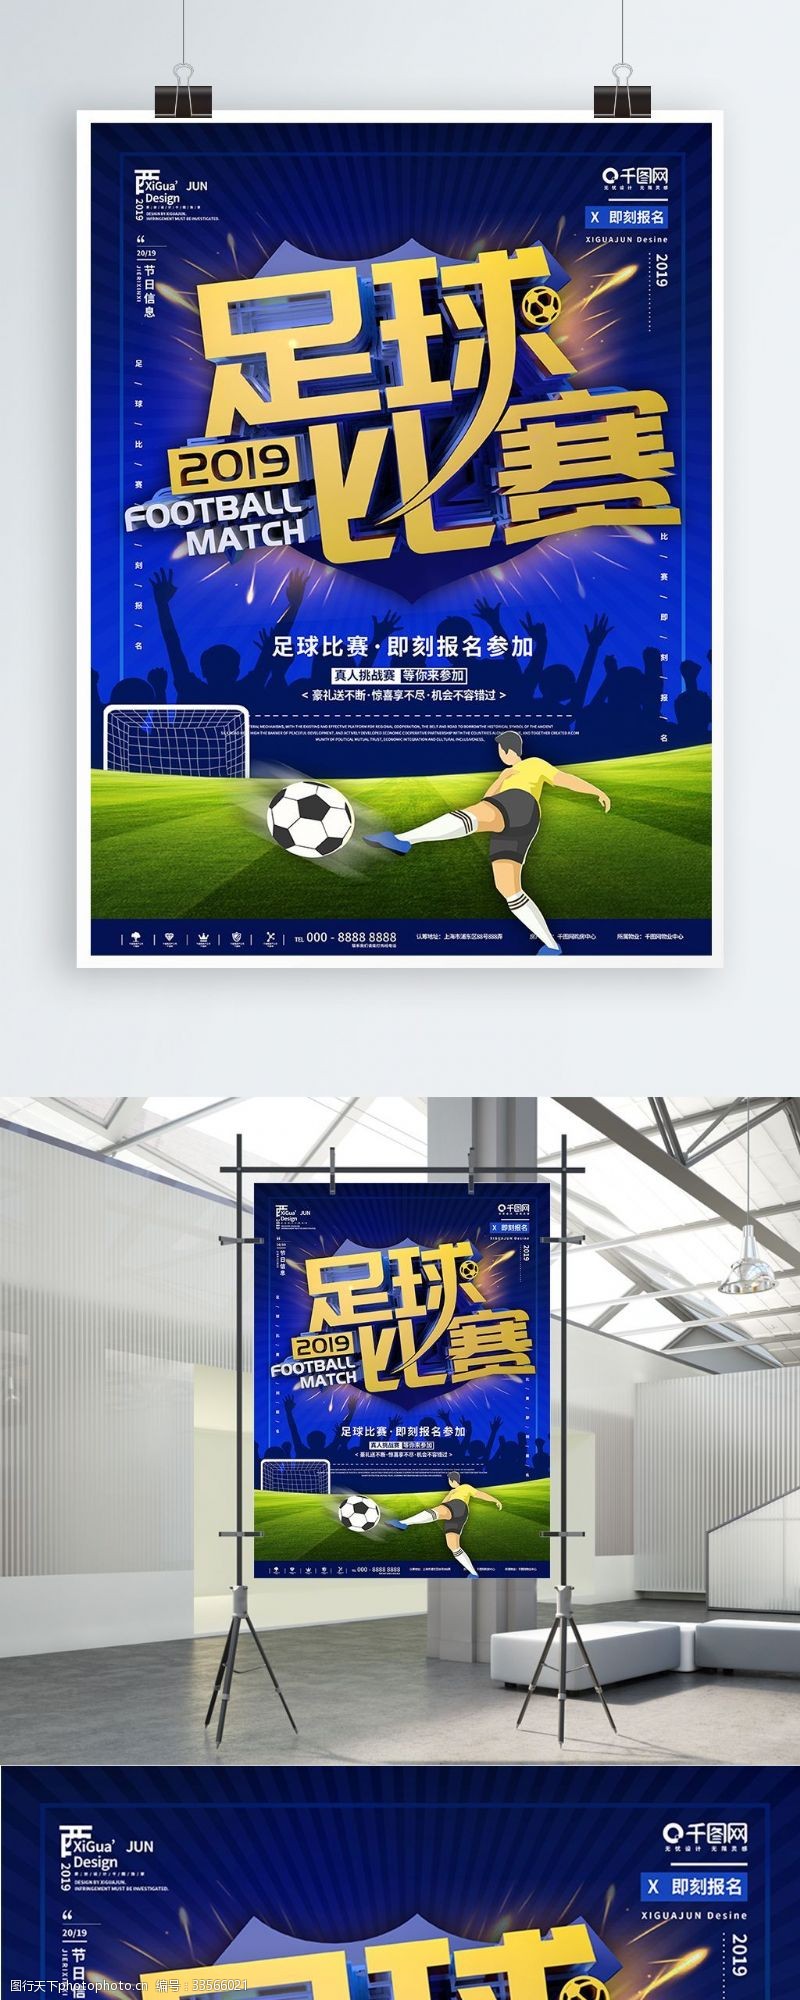 校园足球蓝色简约足球比赛报名宣传海报